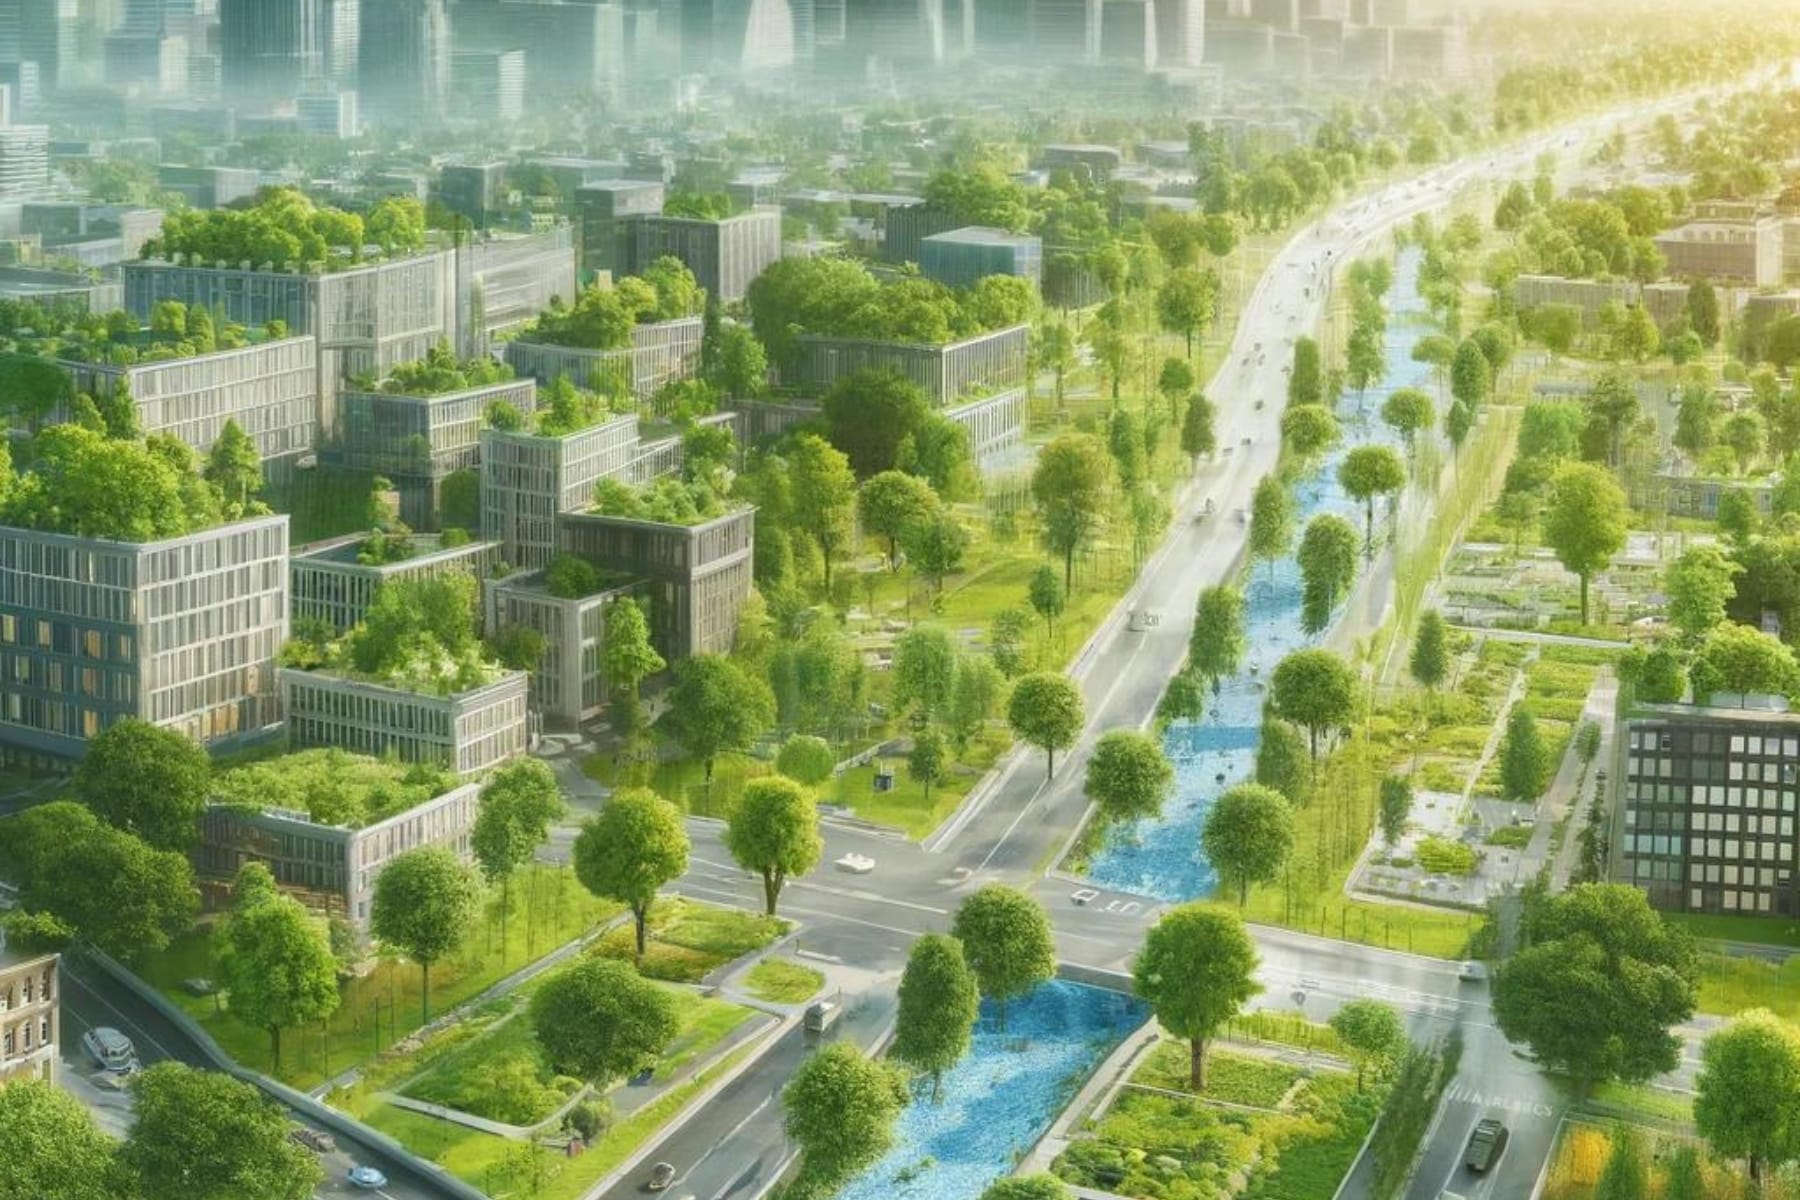 Descubra como cidades esponja combatem enchentes urbanas com soluções sustentáveis e inovadoras. Benefícios e exemplos.